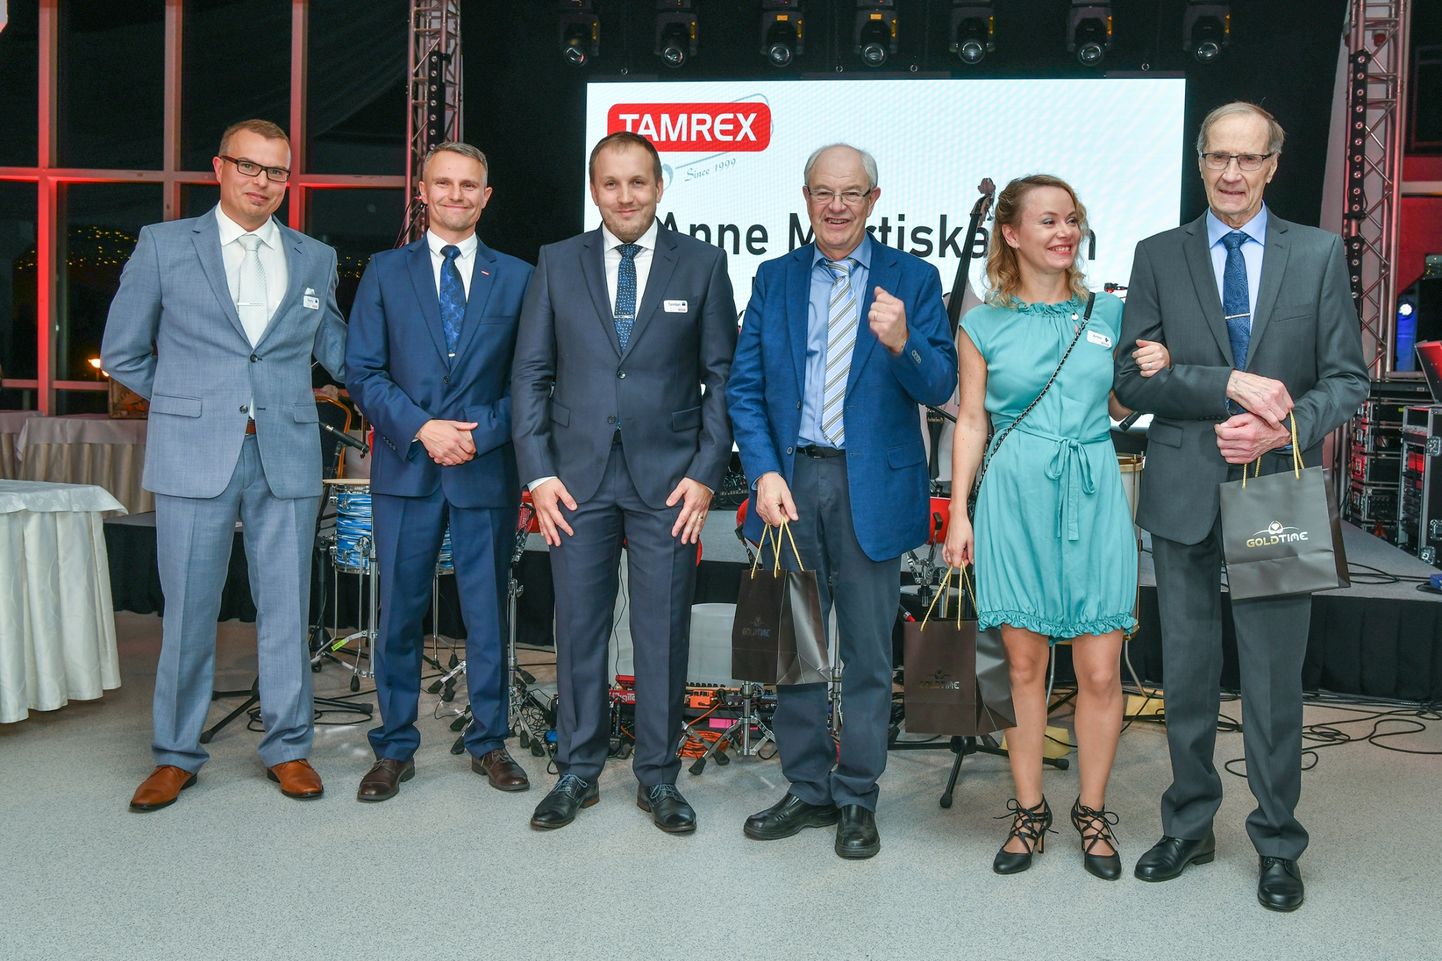 Tamrexi kauplustekett sai eestlastest omanikud: vasakult Harry Volke, Raul Volke ja Tambet Tamm. Fotol on ka endised omanikud, Henry Ray (paremalt kolmas) ning Anne Martiskainen ning Perrti Liuha.